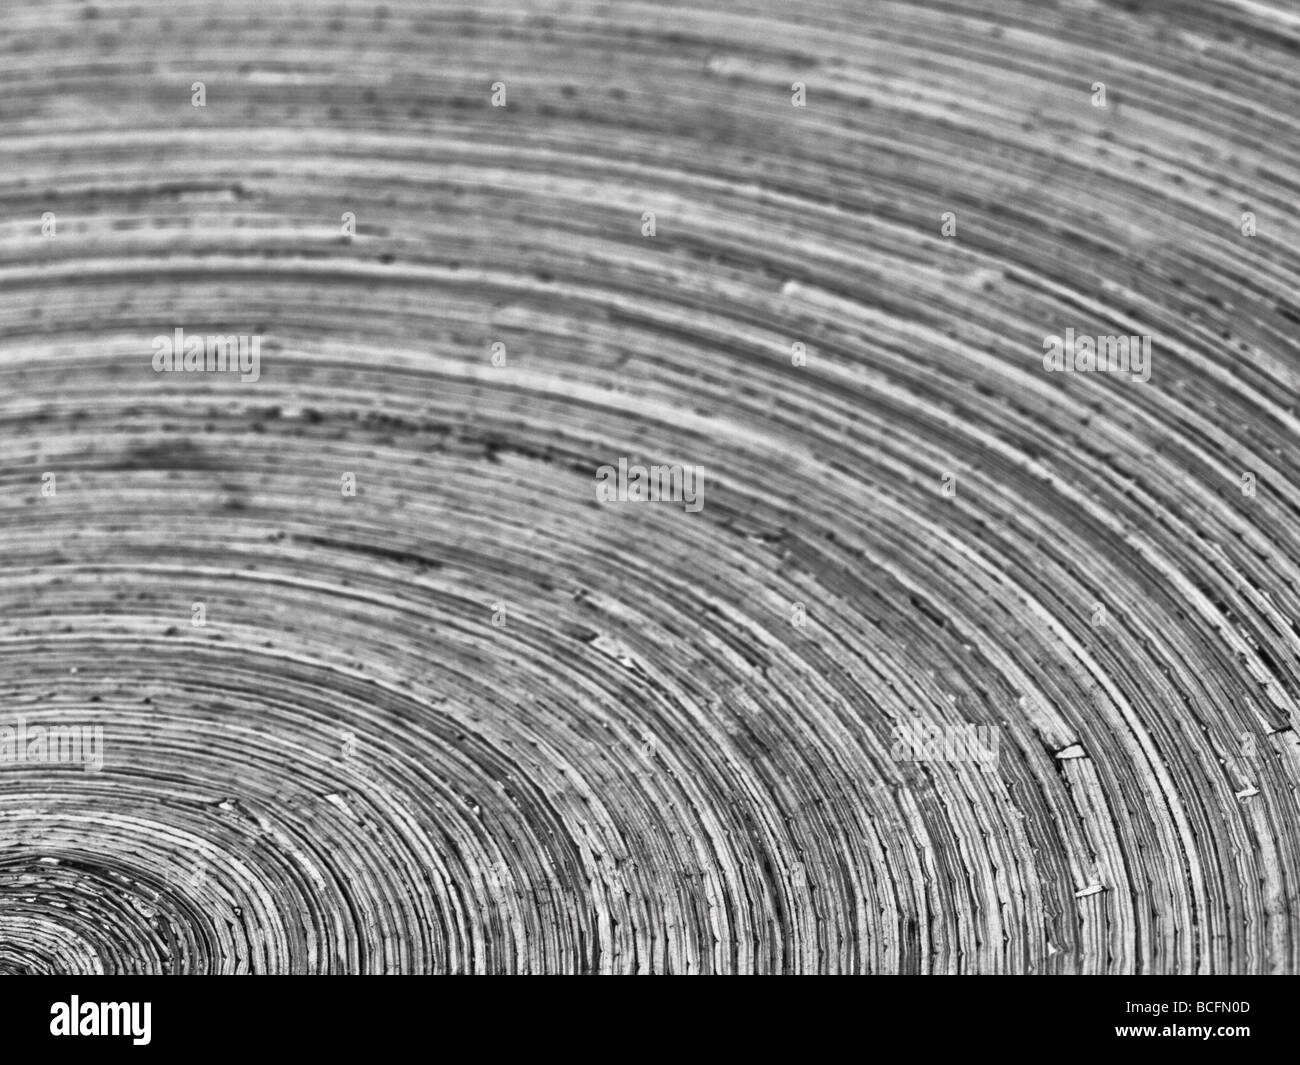 Ein Detail einer Obstschale Weizenstroh-Wolle. Stockfoto